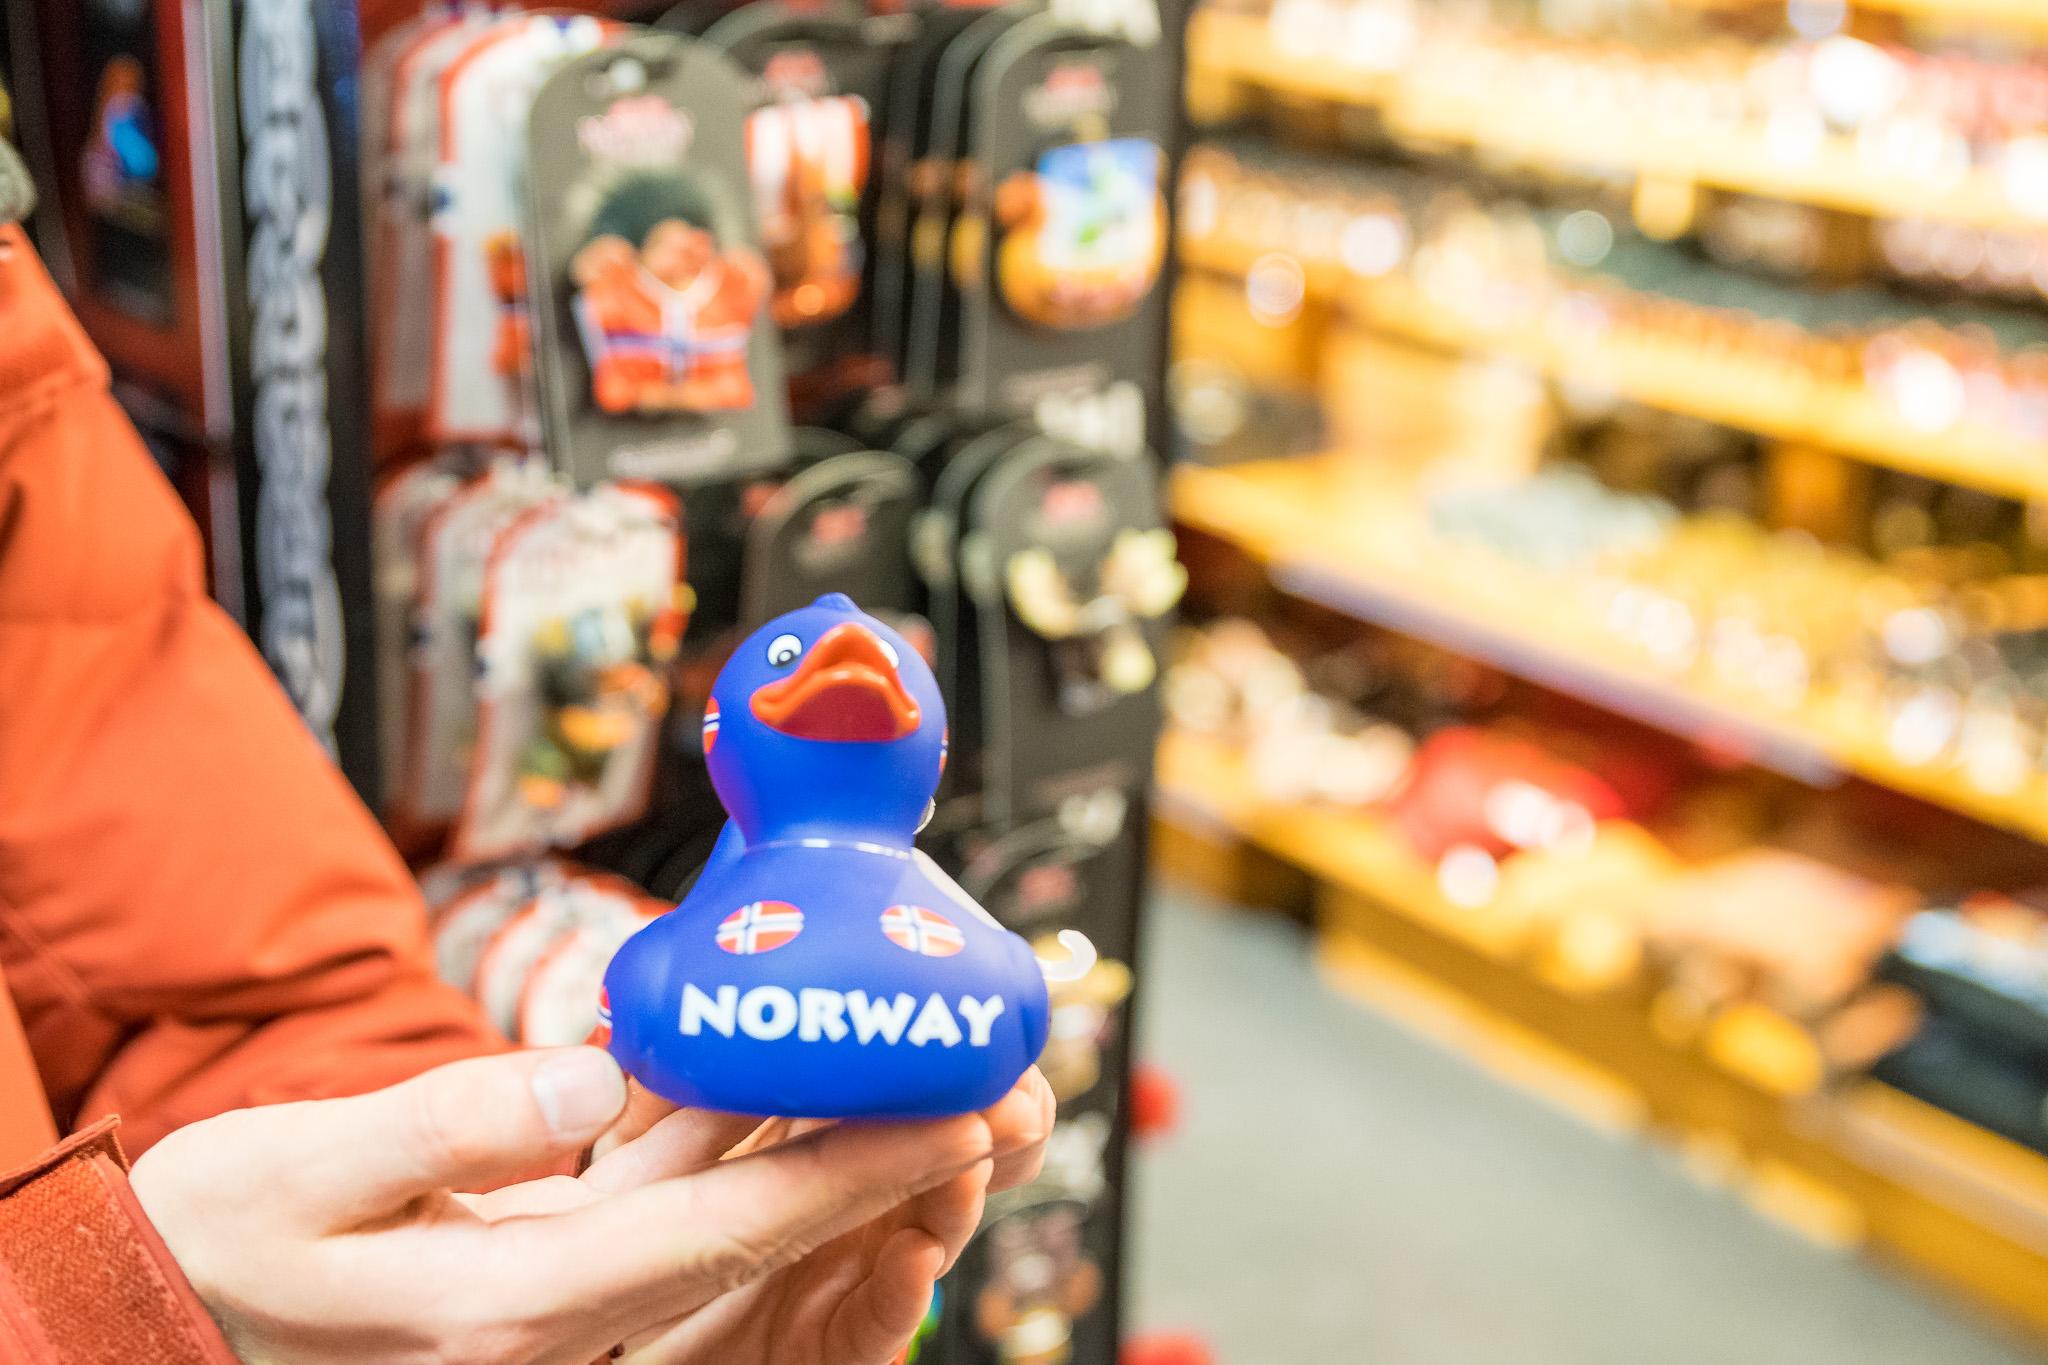 Die norwegische Ente ist ein enger Verwandter des Reisemaskottchens eines Mitreisenden. Leider sind die beiden sich nicht begegnet.